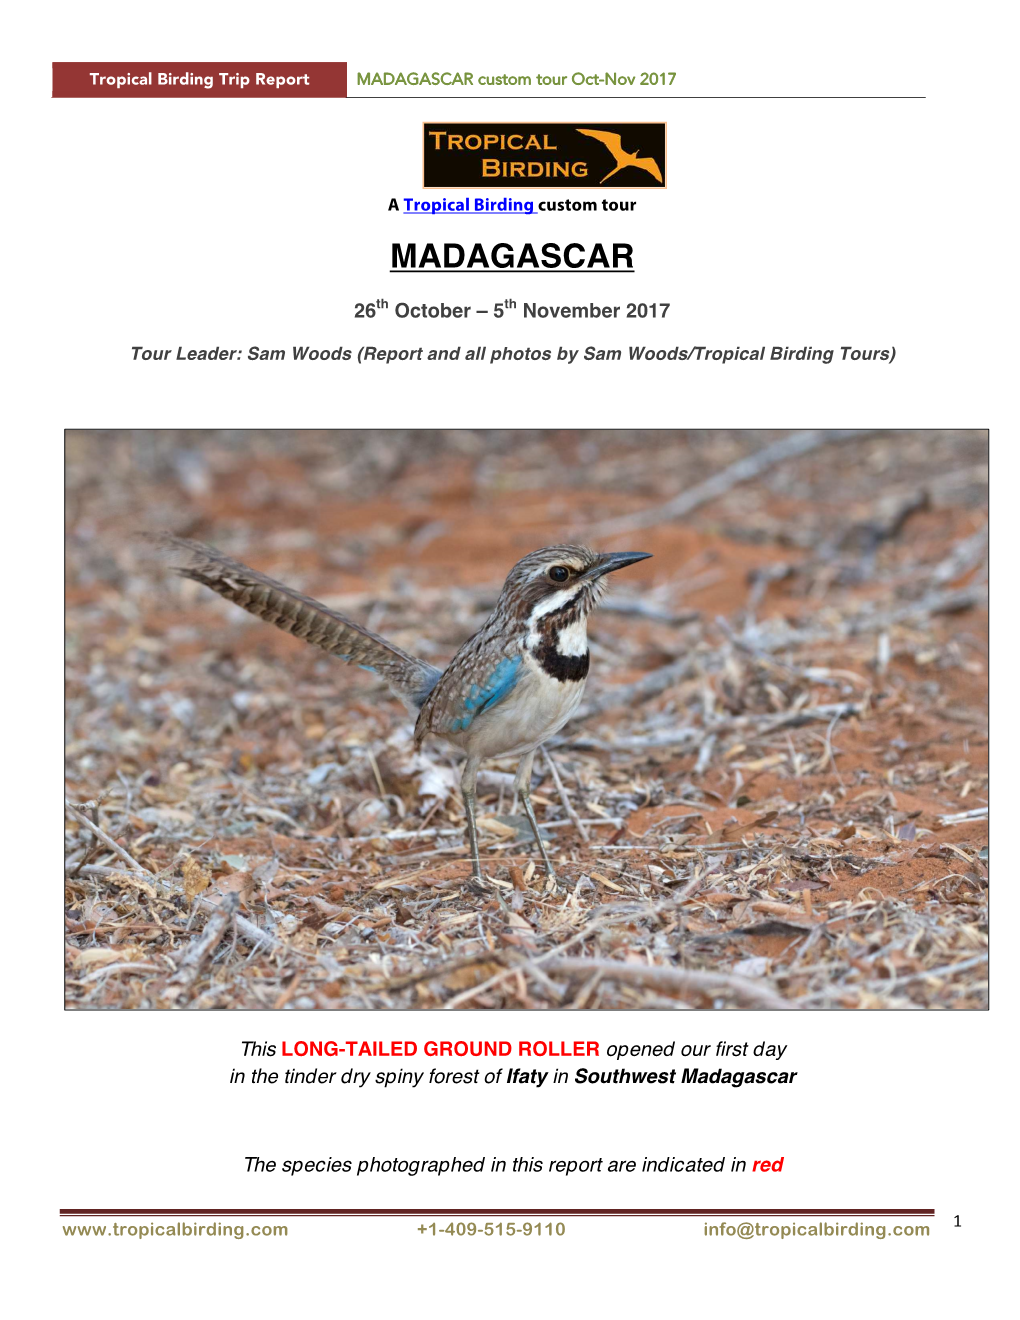 MADAGASCAR Custom Tour Oct-Nov 2017